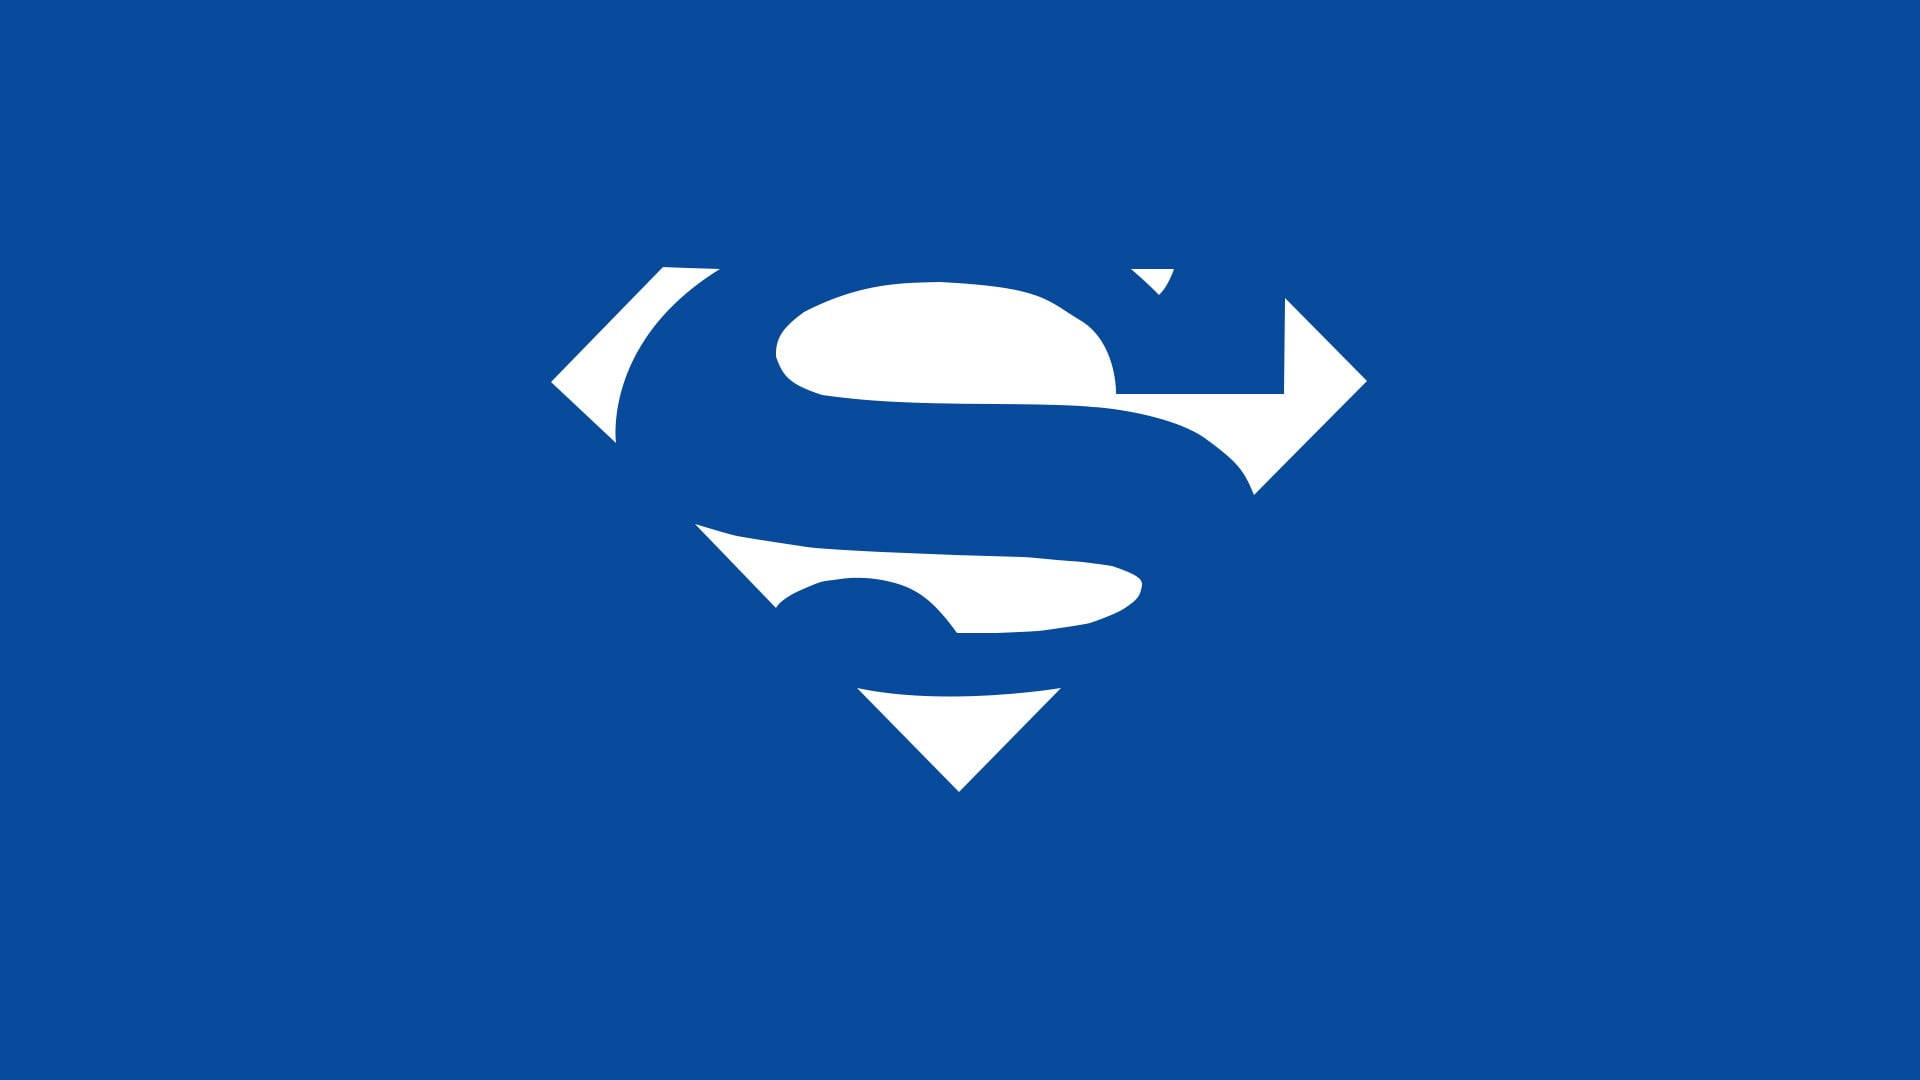 Logotipominimalista De Superman En Azul Y Blanco. Fondo de pantalla